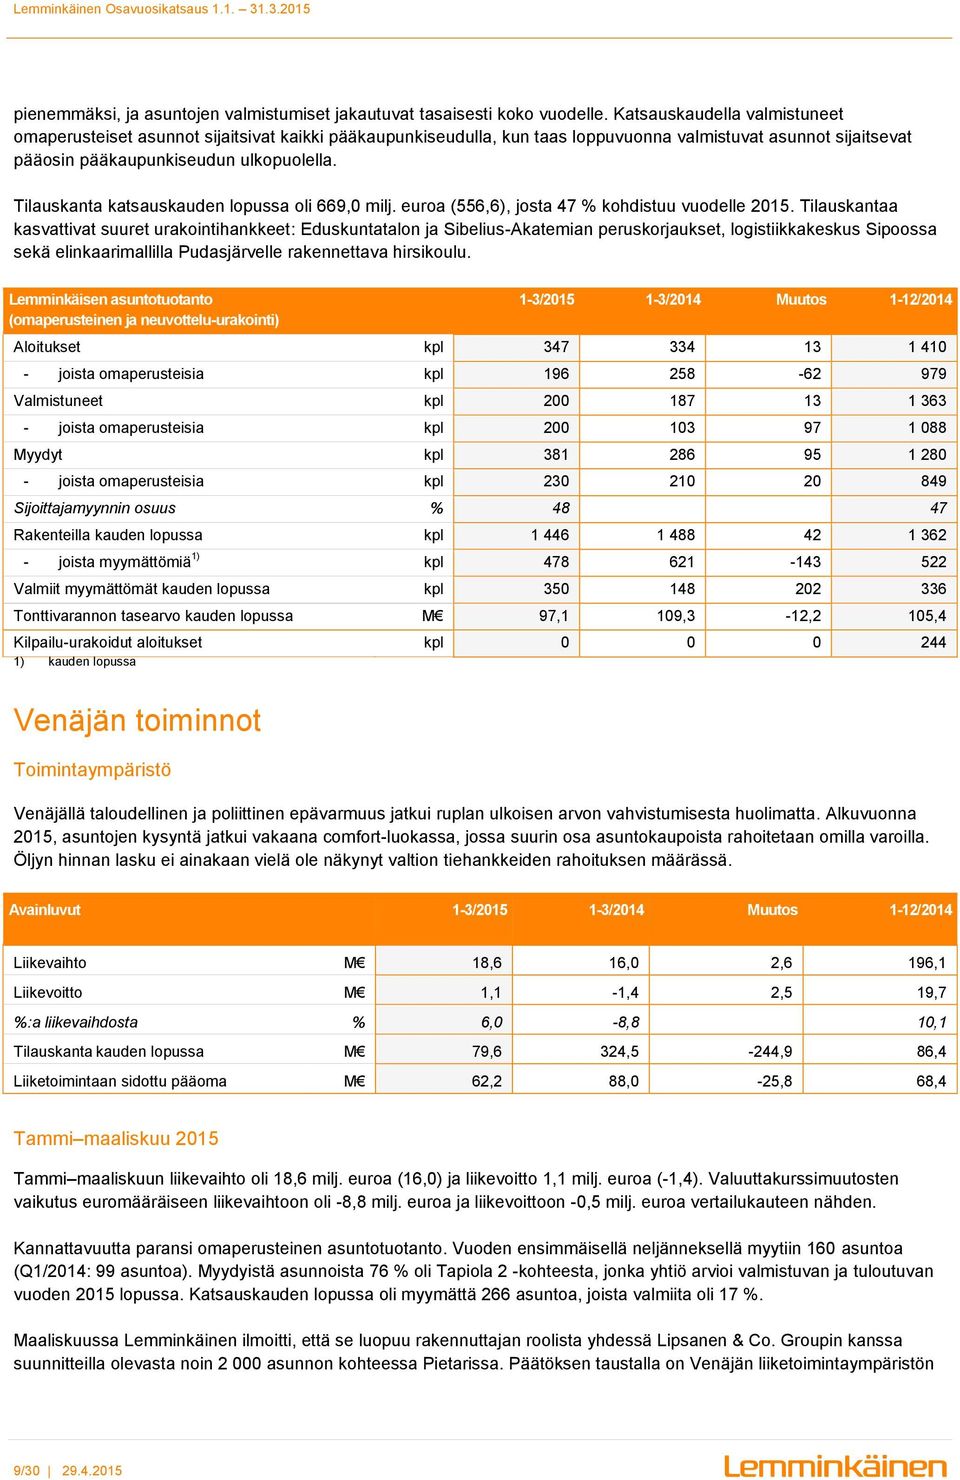 Tilauskanta katsauskauden lopussa oli 669,0 milj. euroa (556,6), josta 47 % kohdistuu vuodelle 2015.